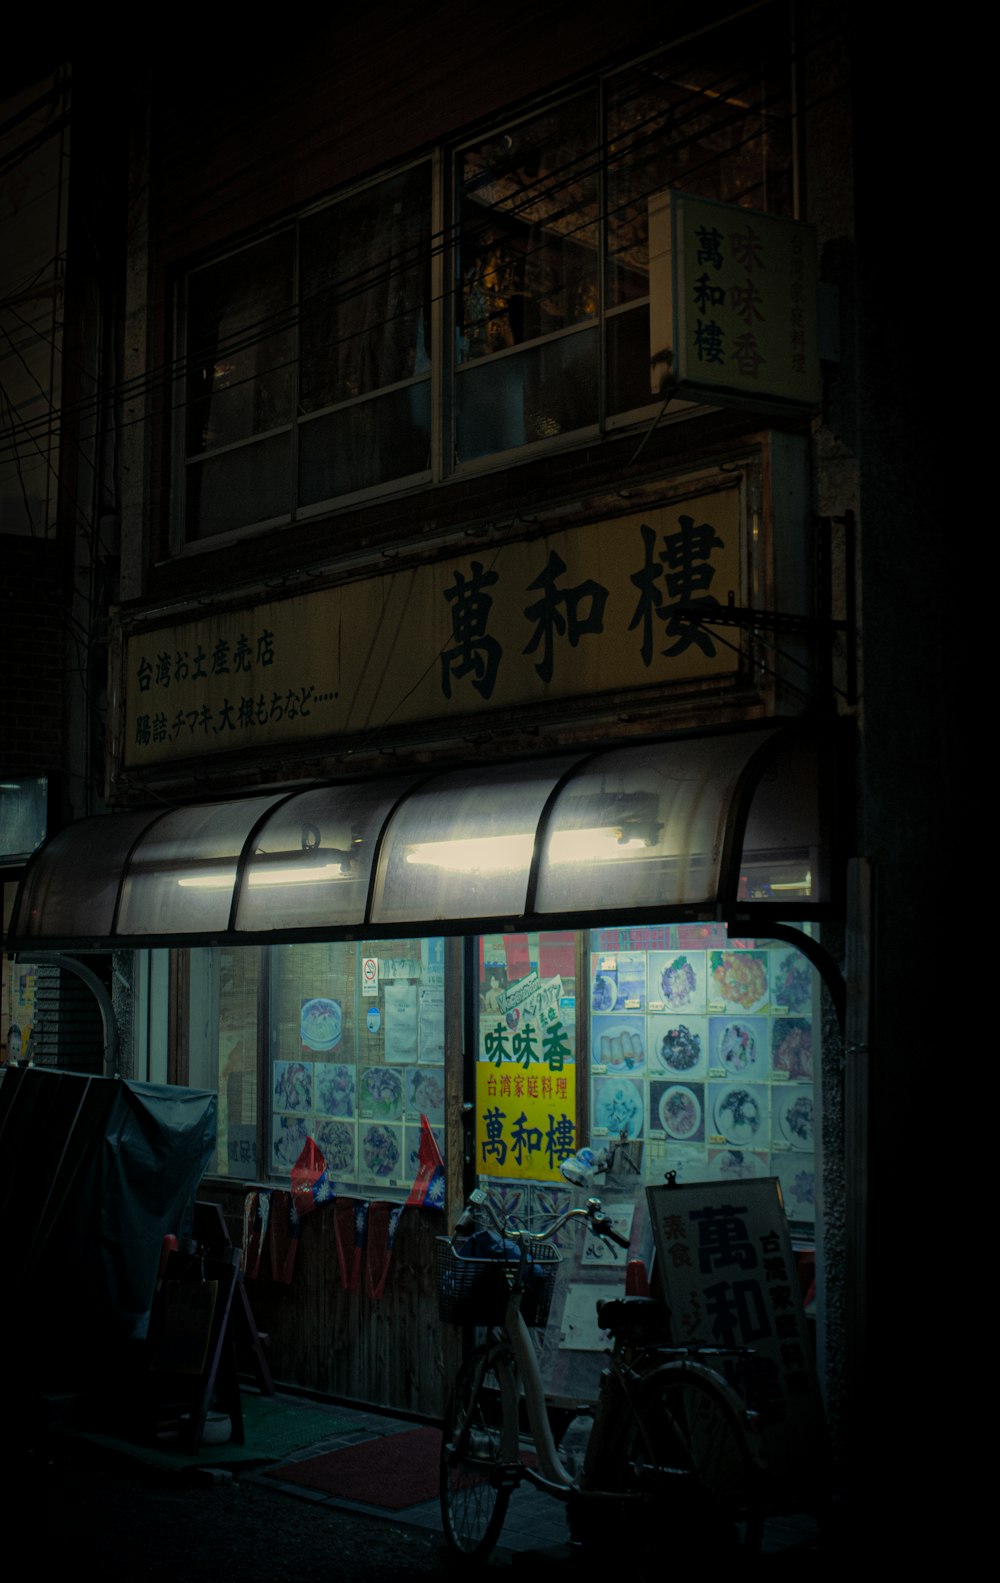 Uma fachada de loja com escrita asiática à noite